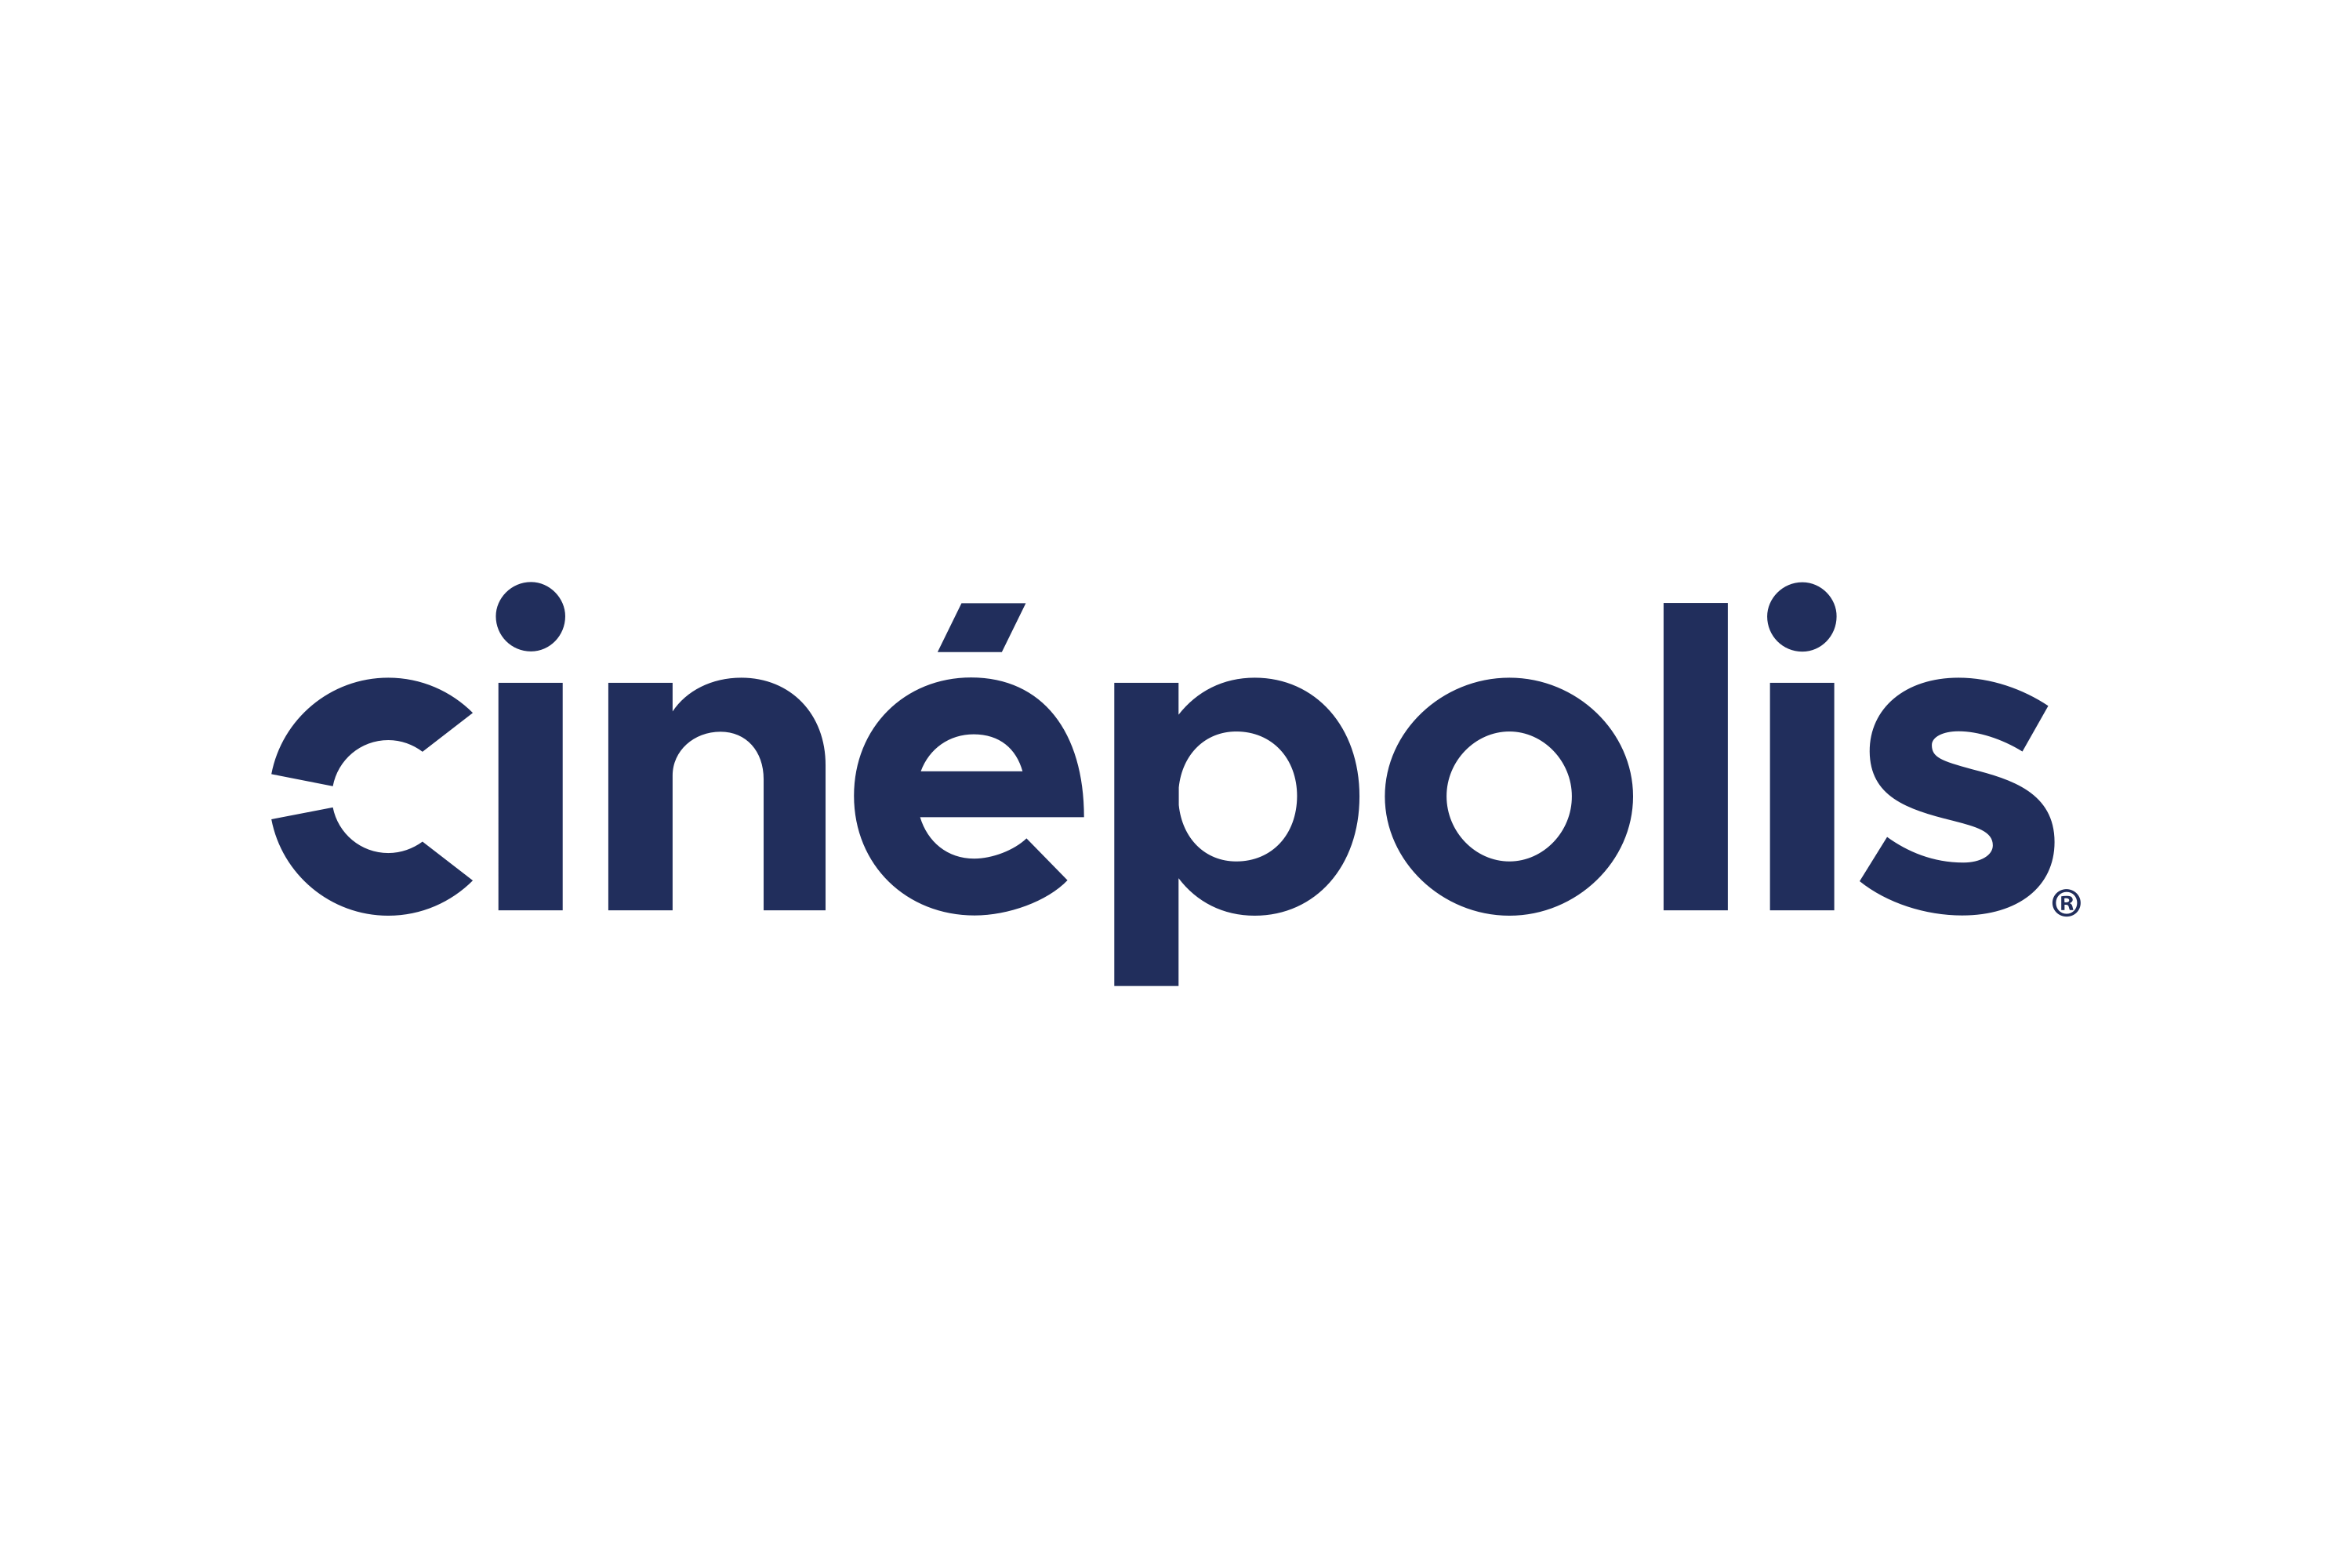 Download Cinepolis Logo In Svg Vector Or Png File Format Logo Wine